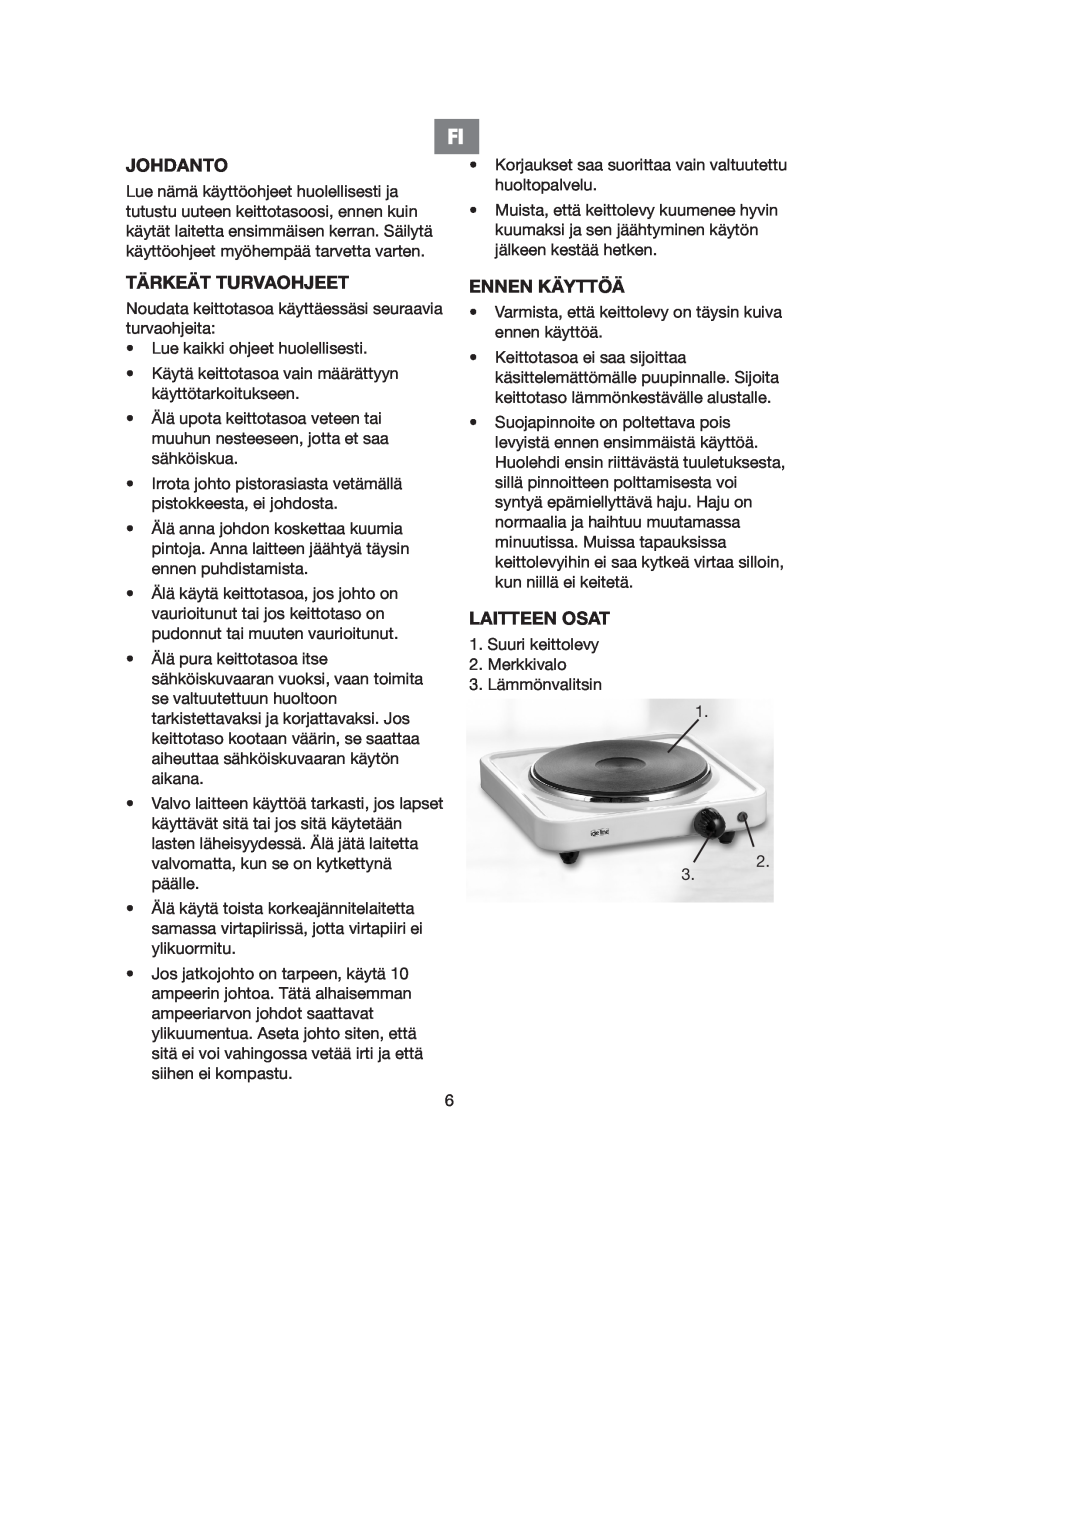 Melissa 750-026 manual Johdanto, Tärkeät Turvaohjeet, Ennen Käyttöä, Laitteen Osat 